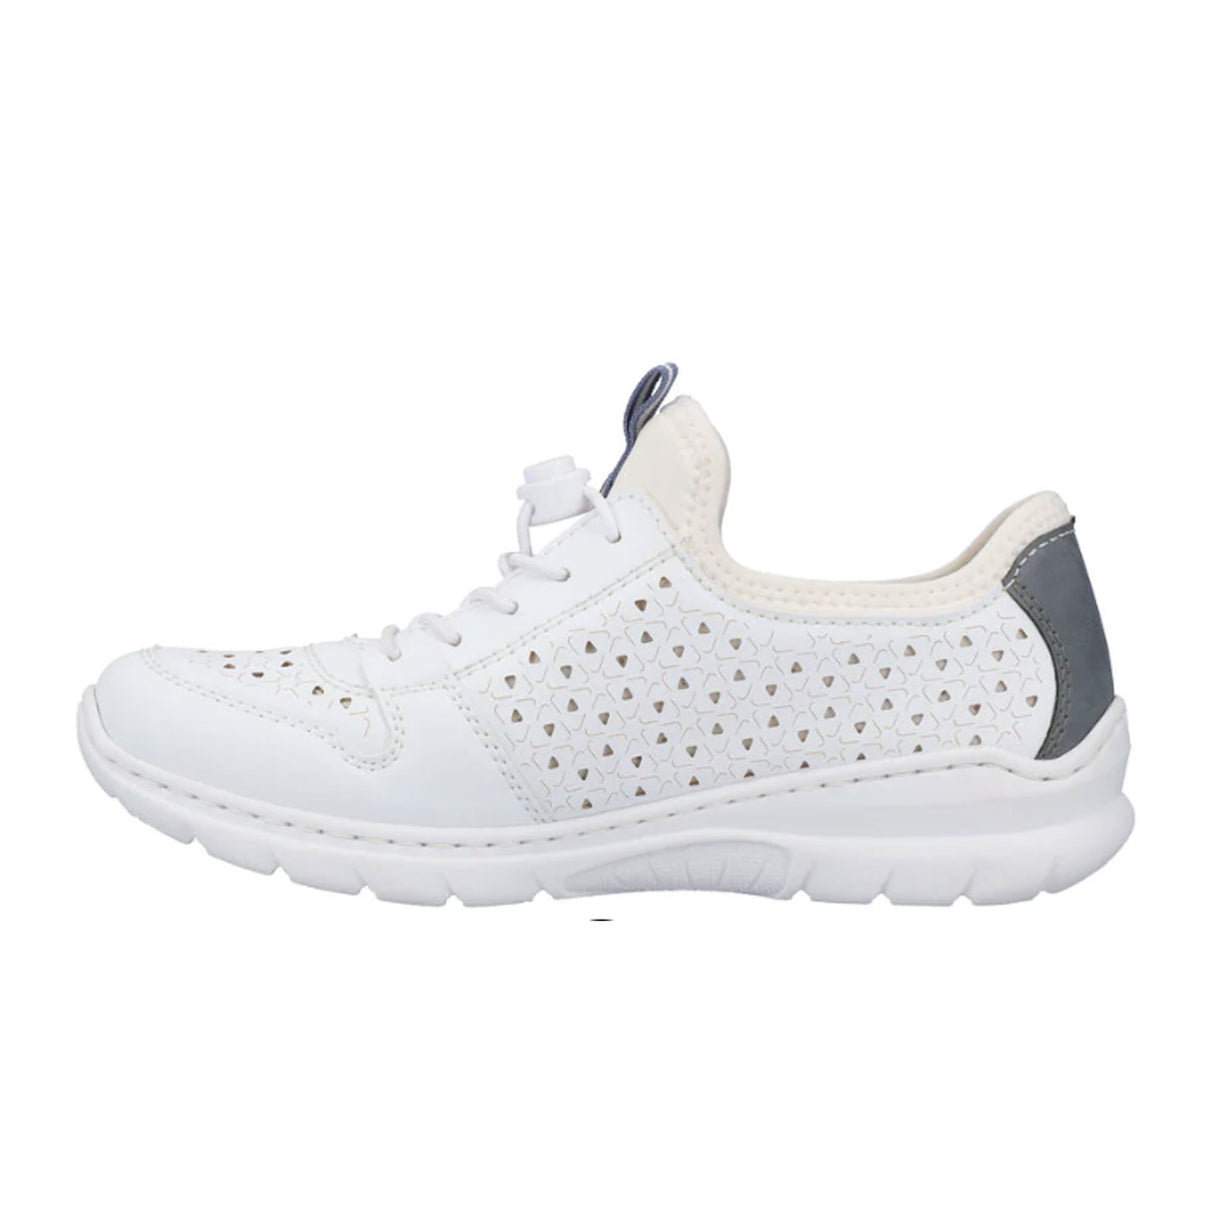 Rieker L3288-80 Sneaker (Women) - Weiss/Adria/Reinweiss Dress-Casual - Sneakers - The Heel Shoe Fitters